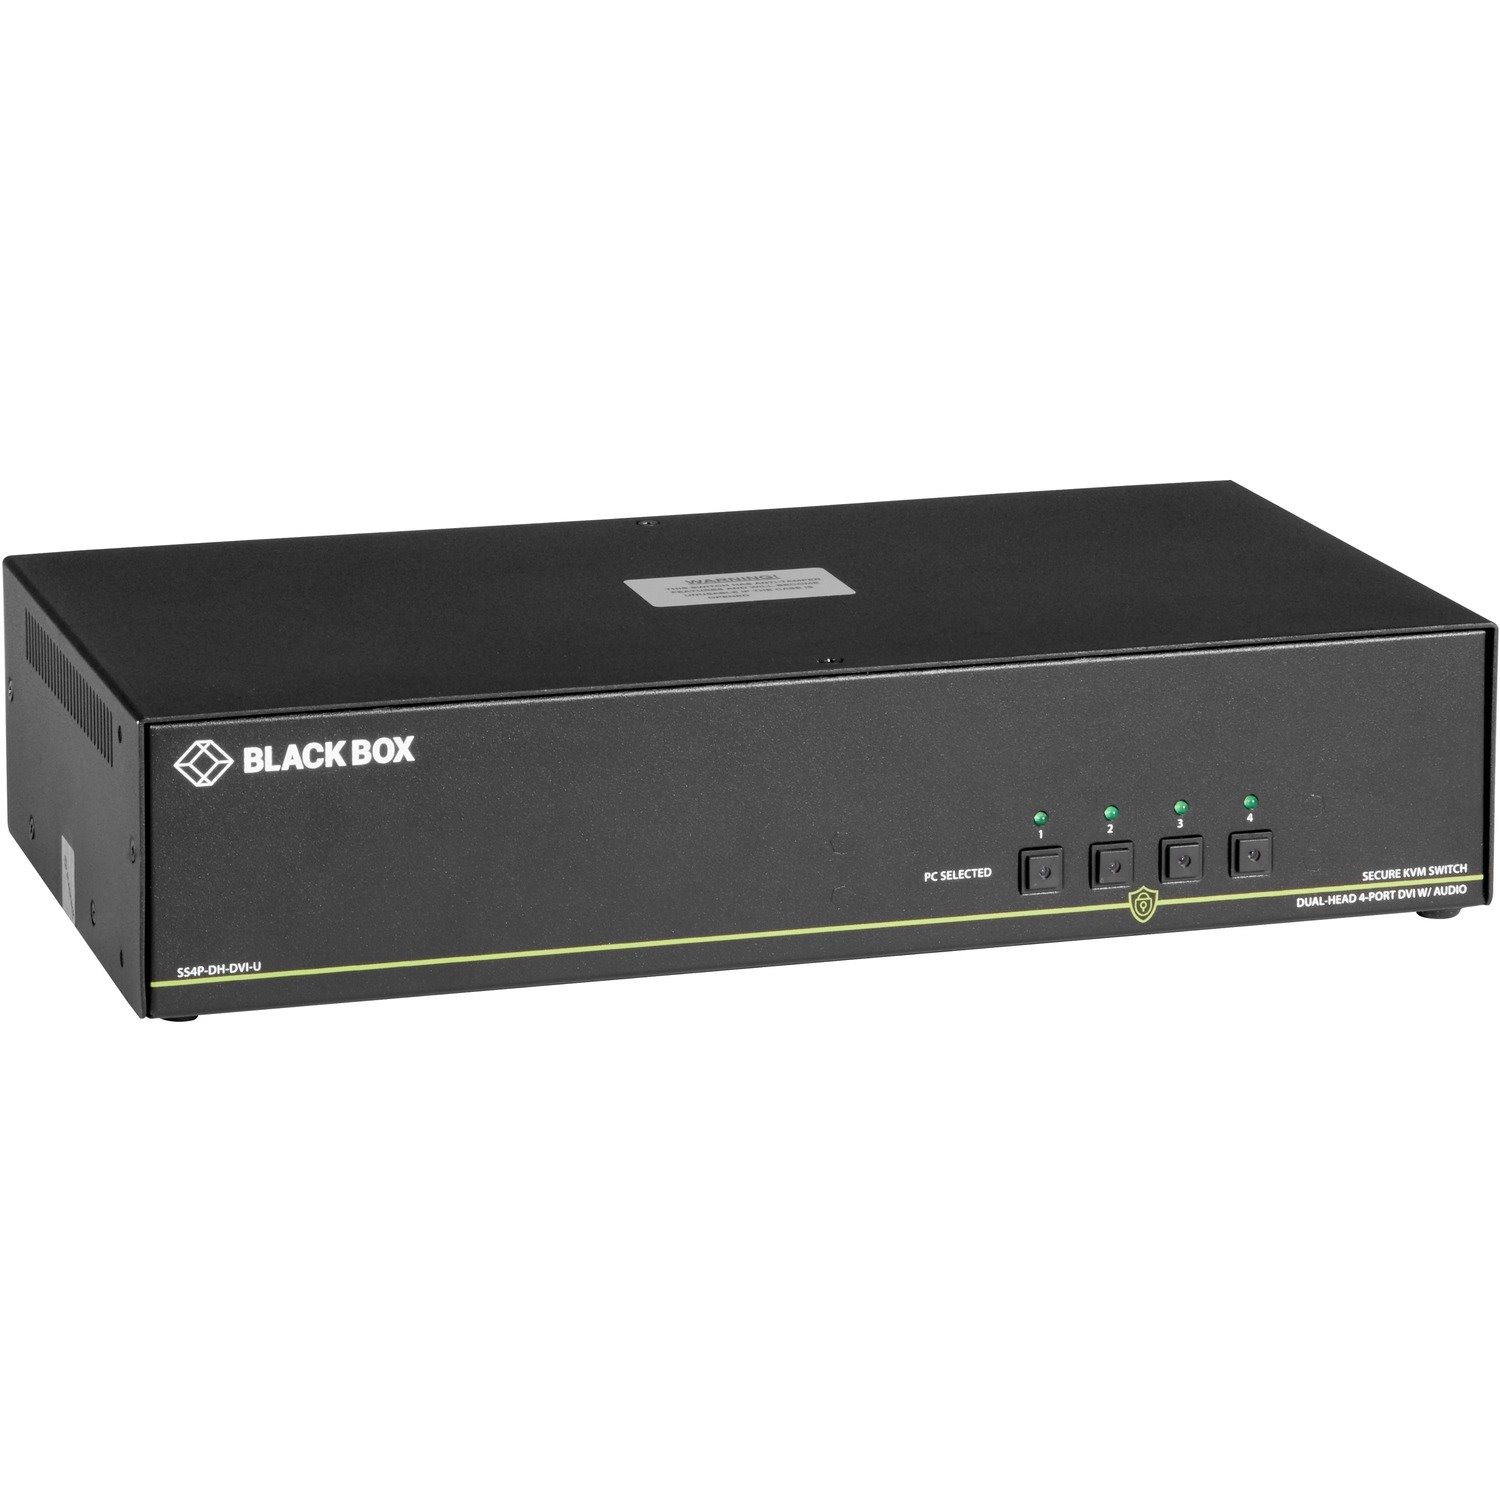 Black Box NIAP 3.0 Secure 4-Port Dual-Head DVI-I KVM Switch